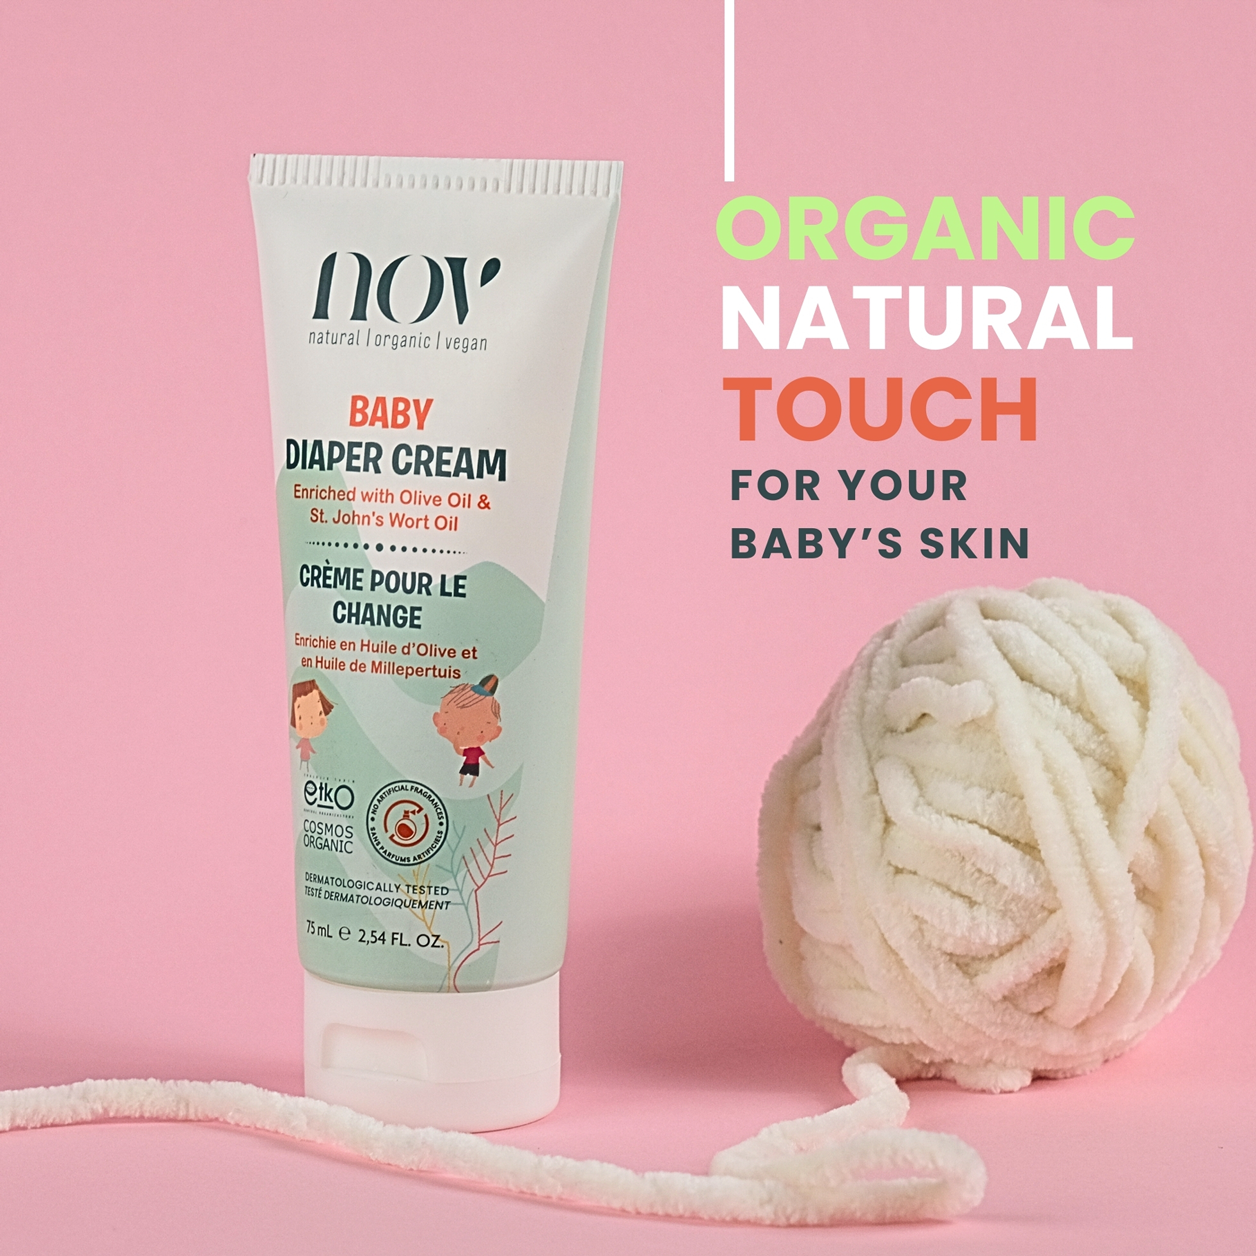 Natural Organic Vegan Baby Diaper Cream